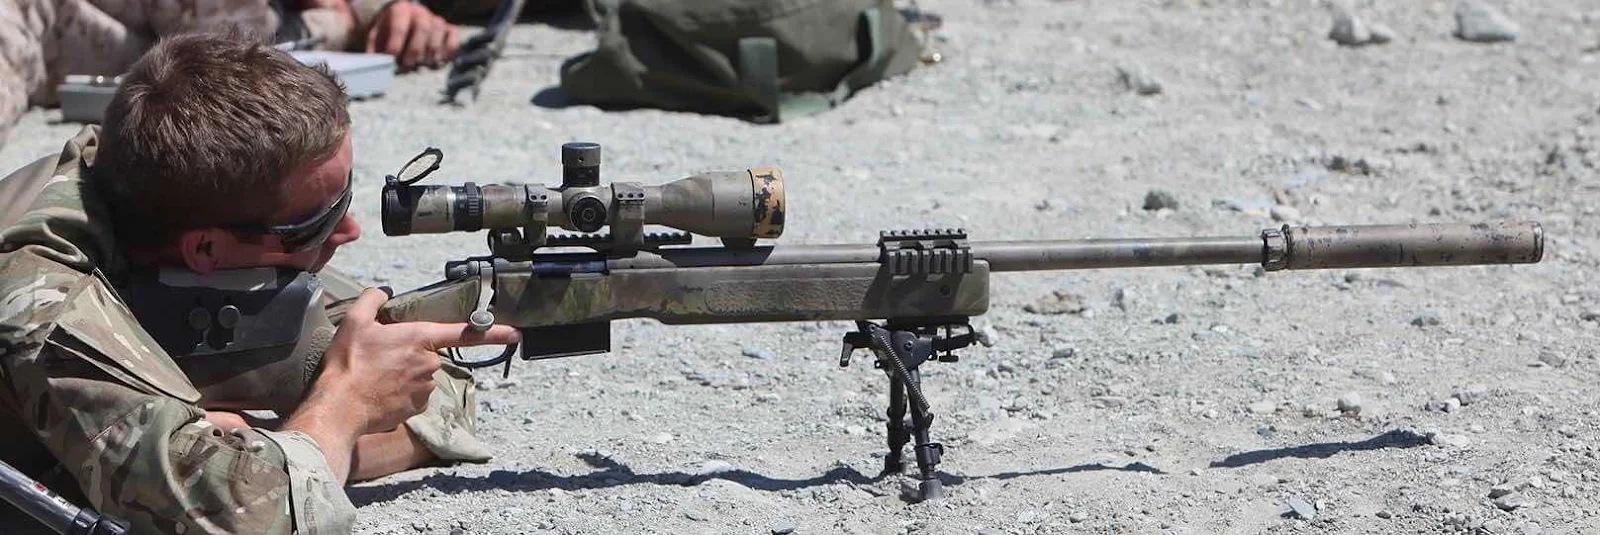 Khẩu M40A5 của TQLC Mỹ sử dụng hiện nay.